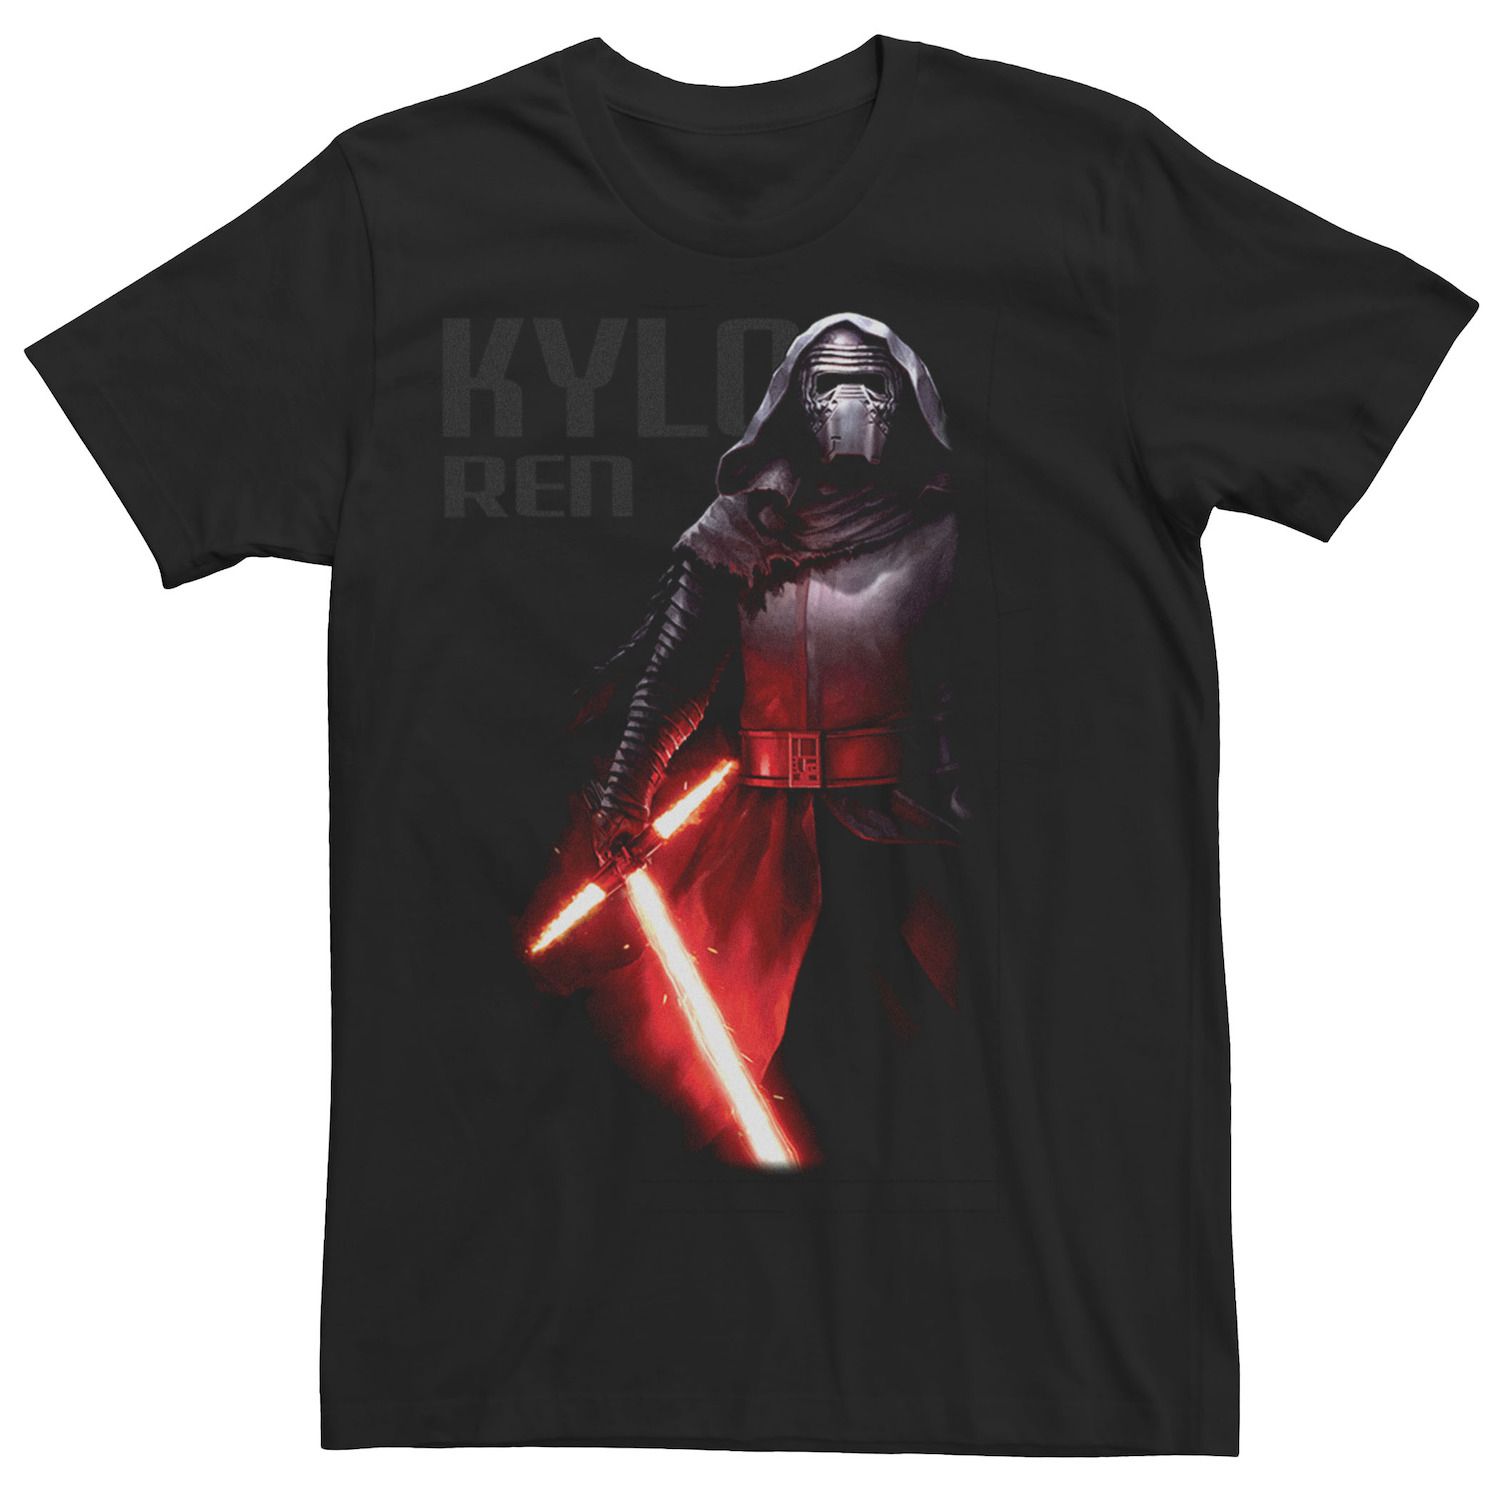 Мужская темная футболка с портретом «Звездные войны Кайло Рен» Star Wars